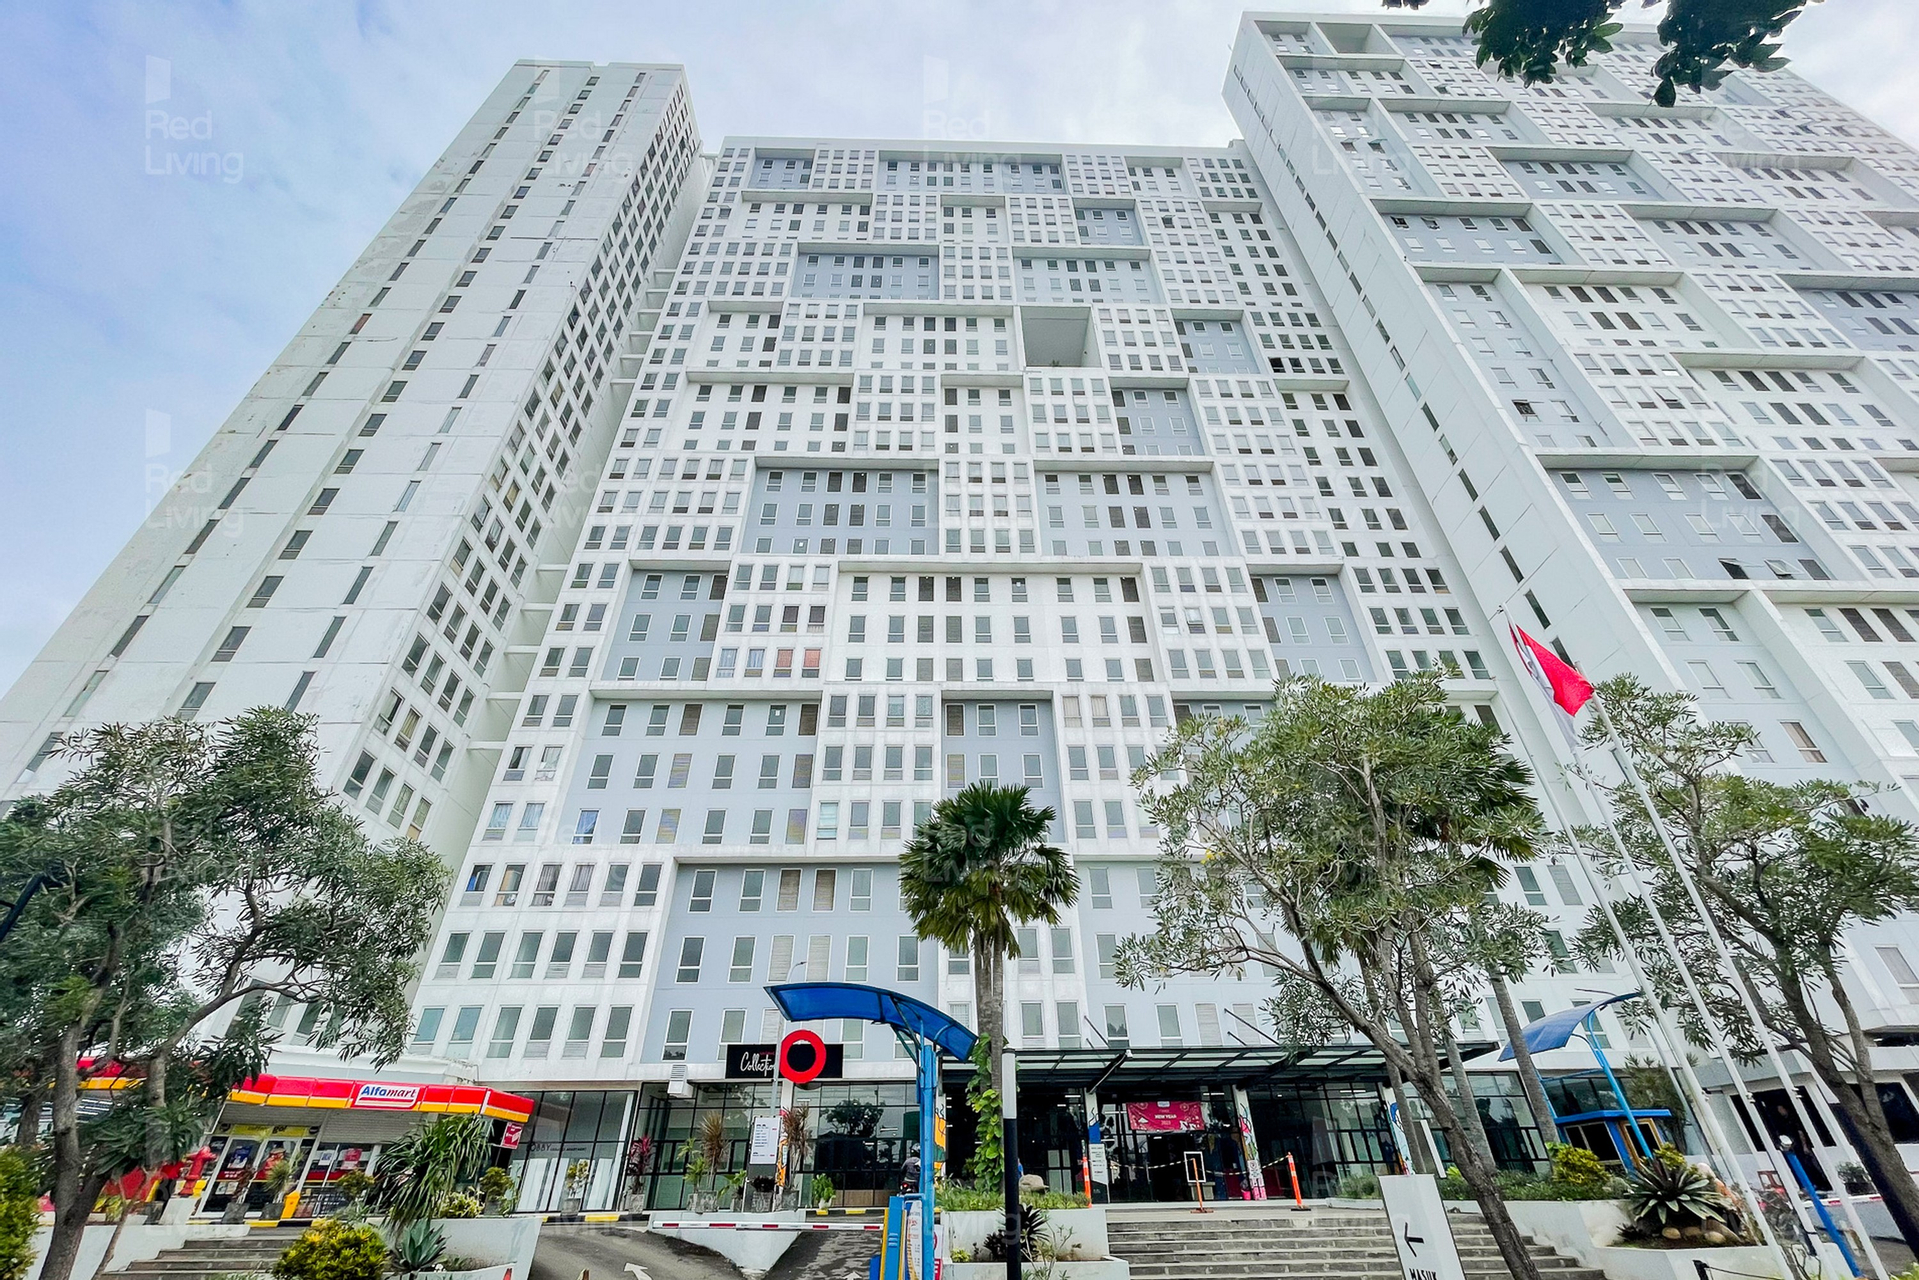 RedLiving Apartemen Patra Land Urbano - Rifki Rooms Tower Mid-West with Netflix, Bekasi